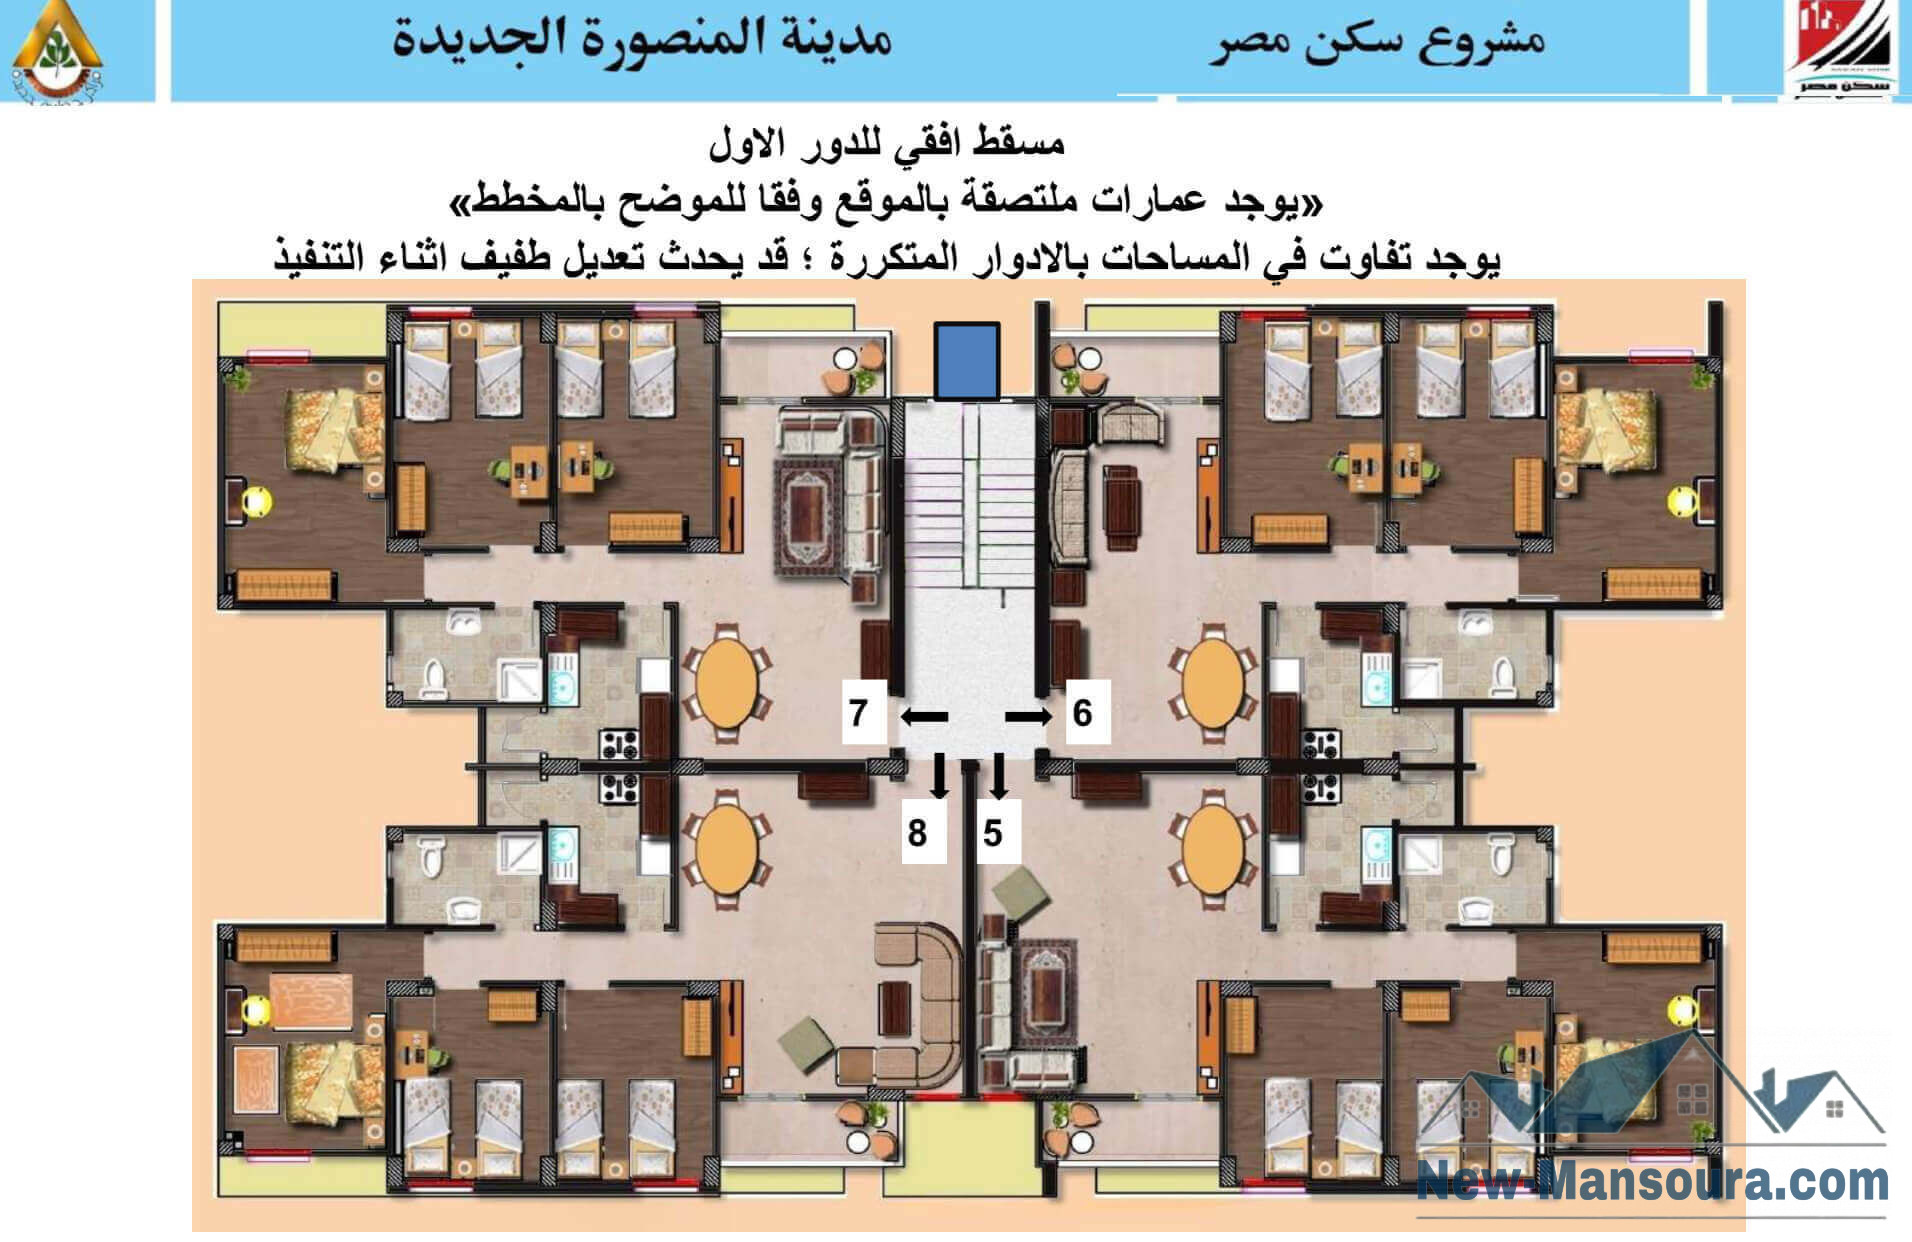 تقسيمة شقق المنصورة الجديدة سكن مصر